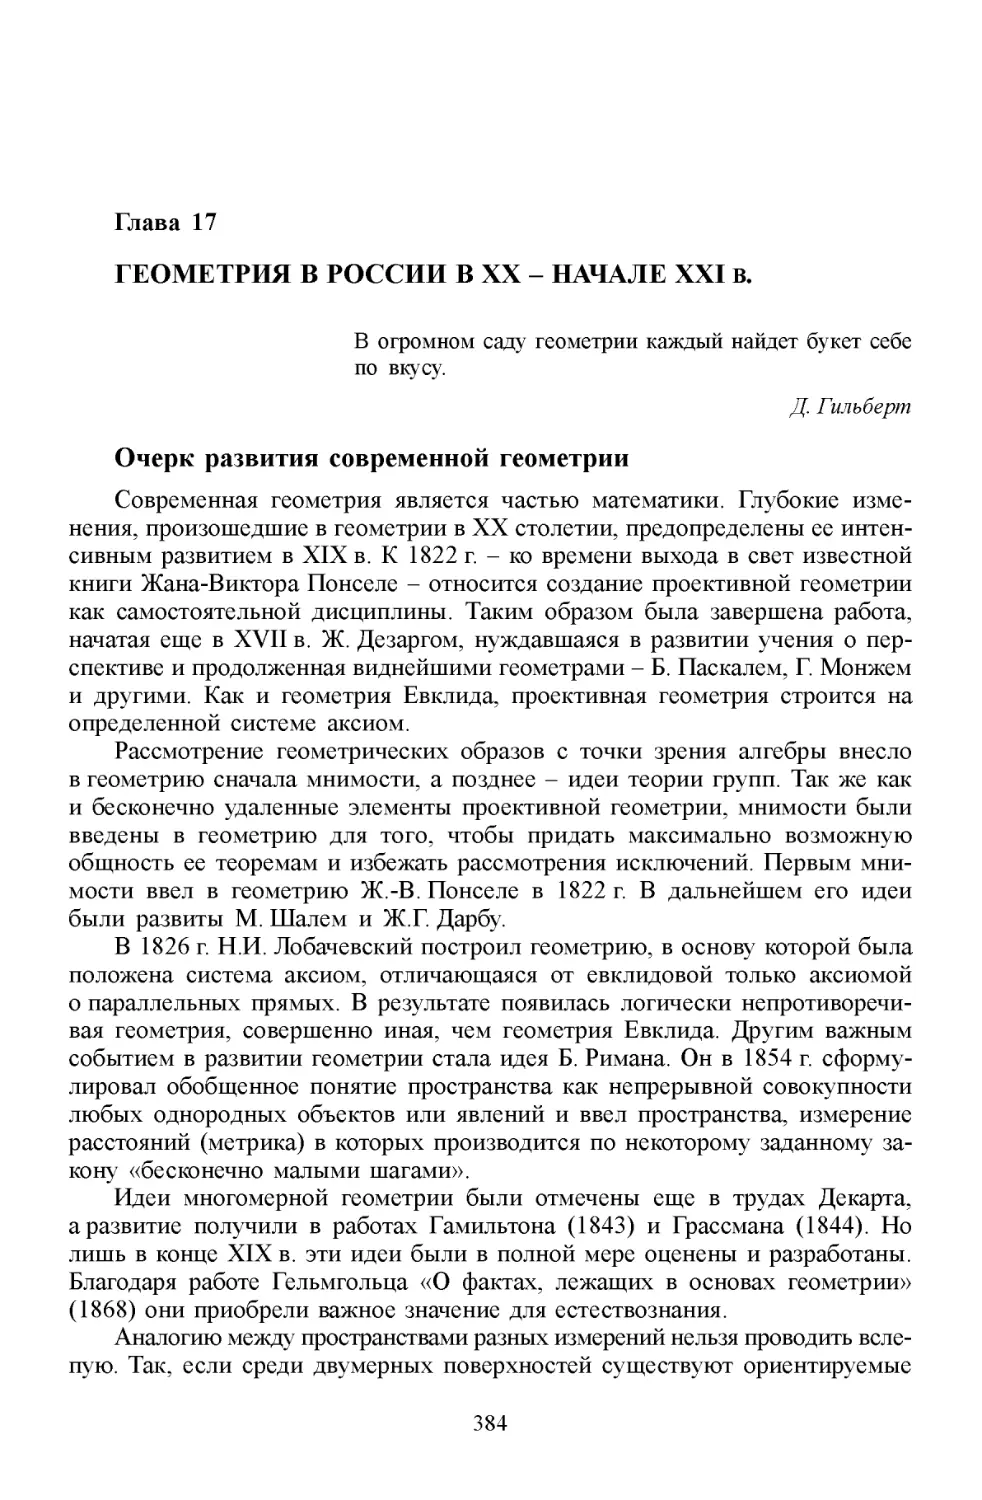 Глава 17. Геометрия в России в XX - начале XXI в
Очерк развития современной геометрии